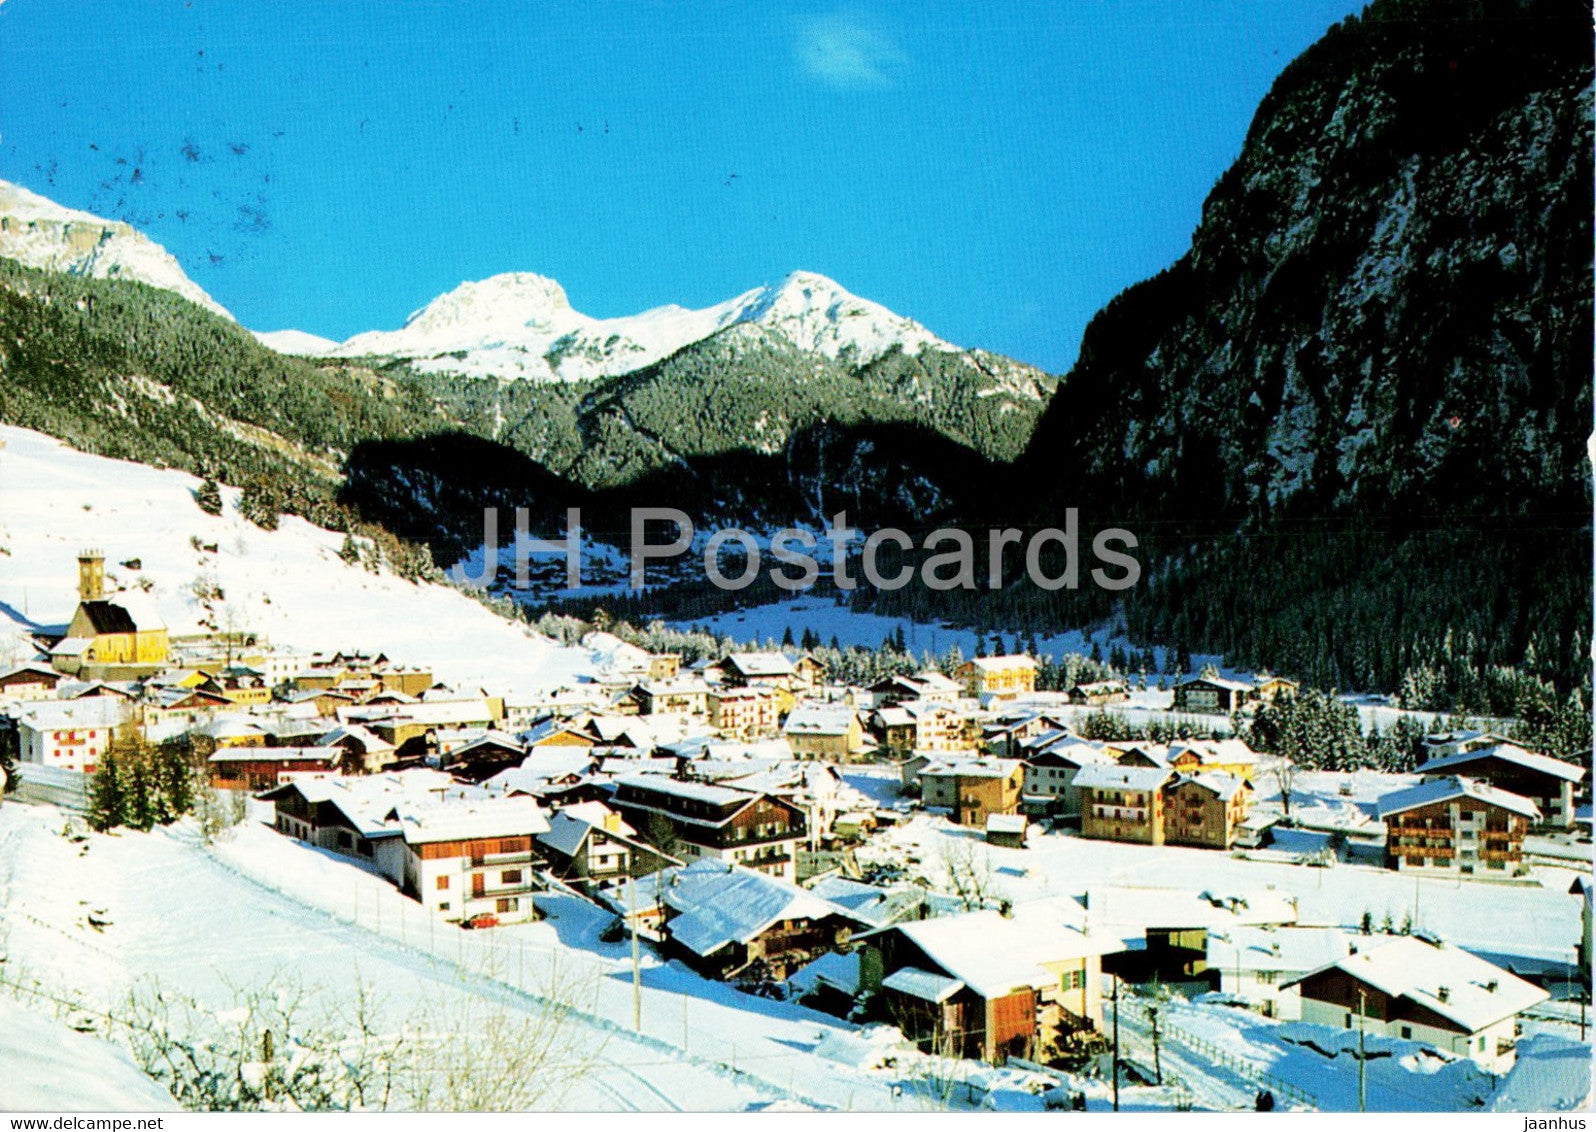 Dolomiti Campitello di Fassa 1448 m - Passo Pordo - 1982 - Italy - used - JH Postcards